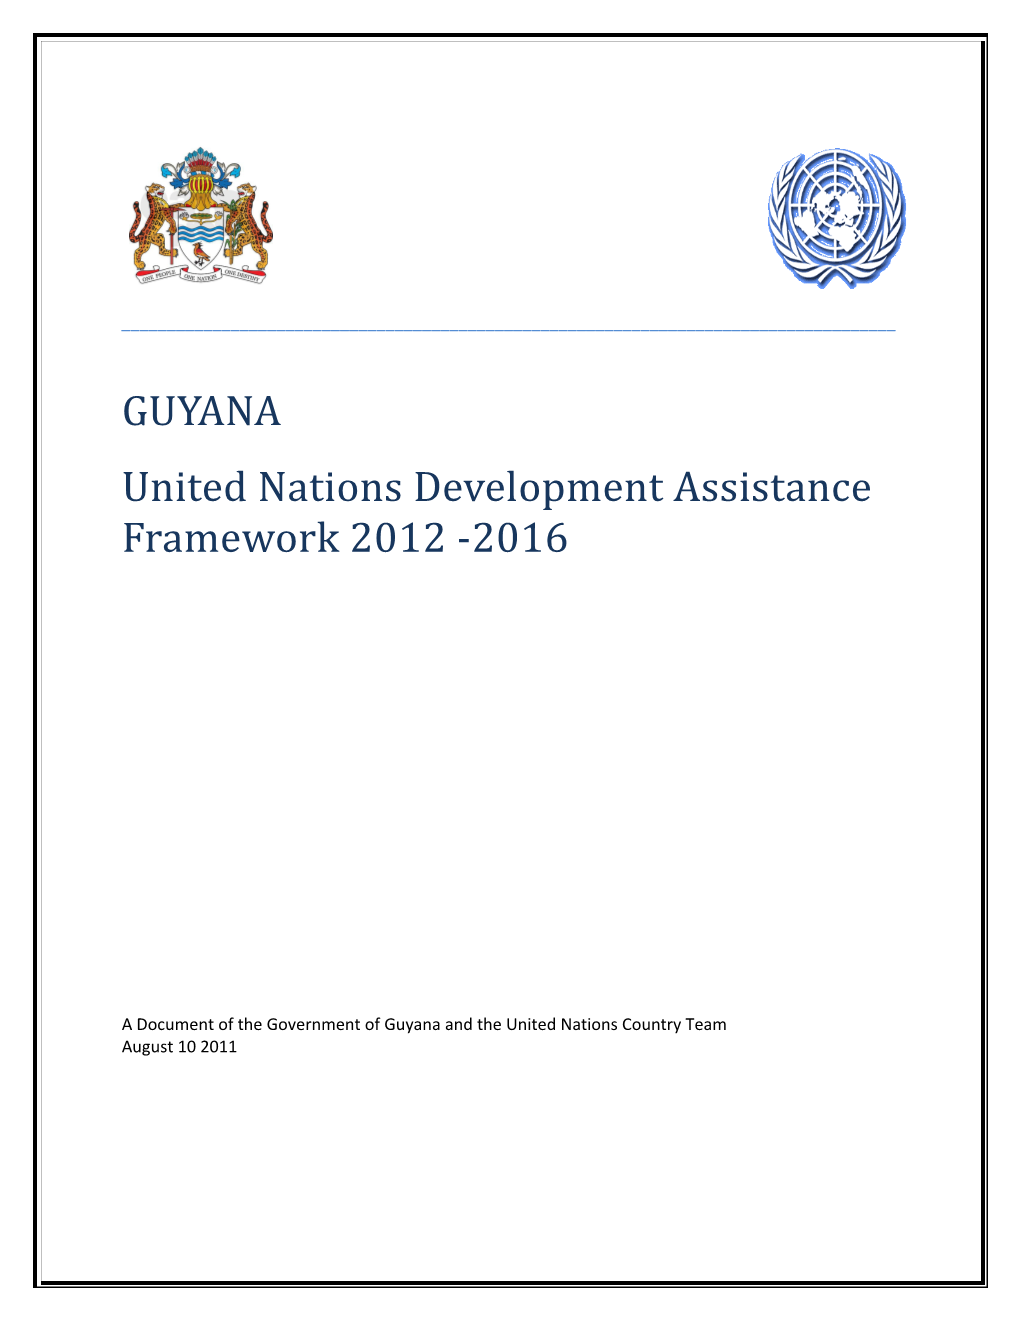 United Nations Development Framework (2012 – 2016) For Guyana